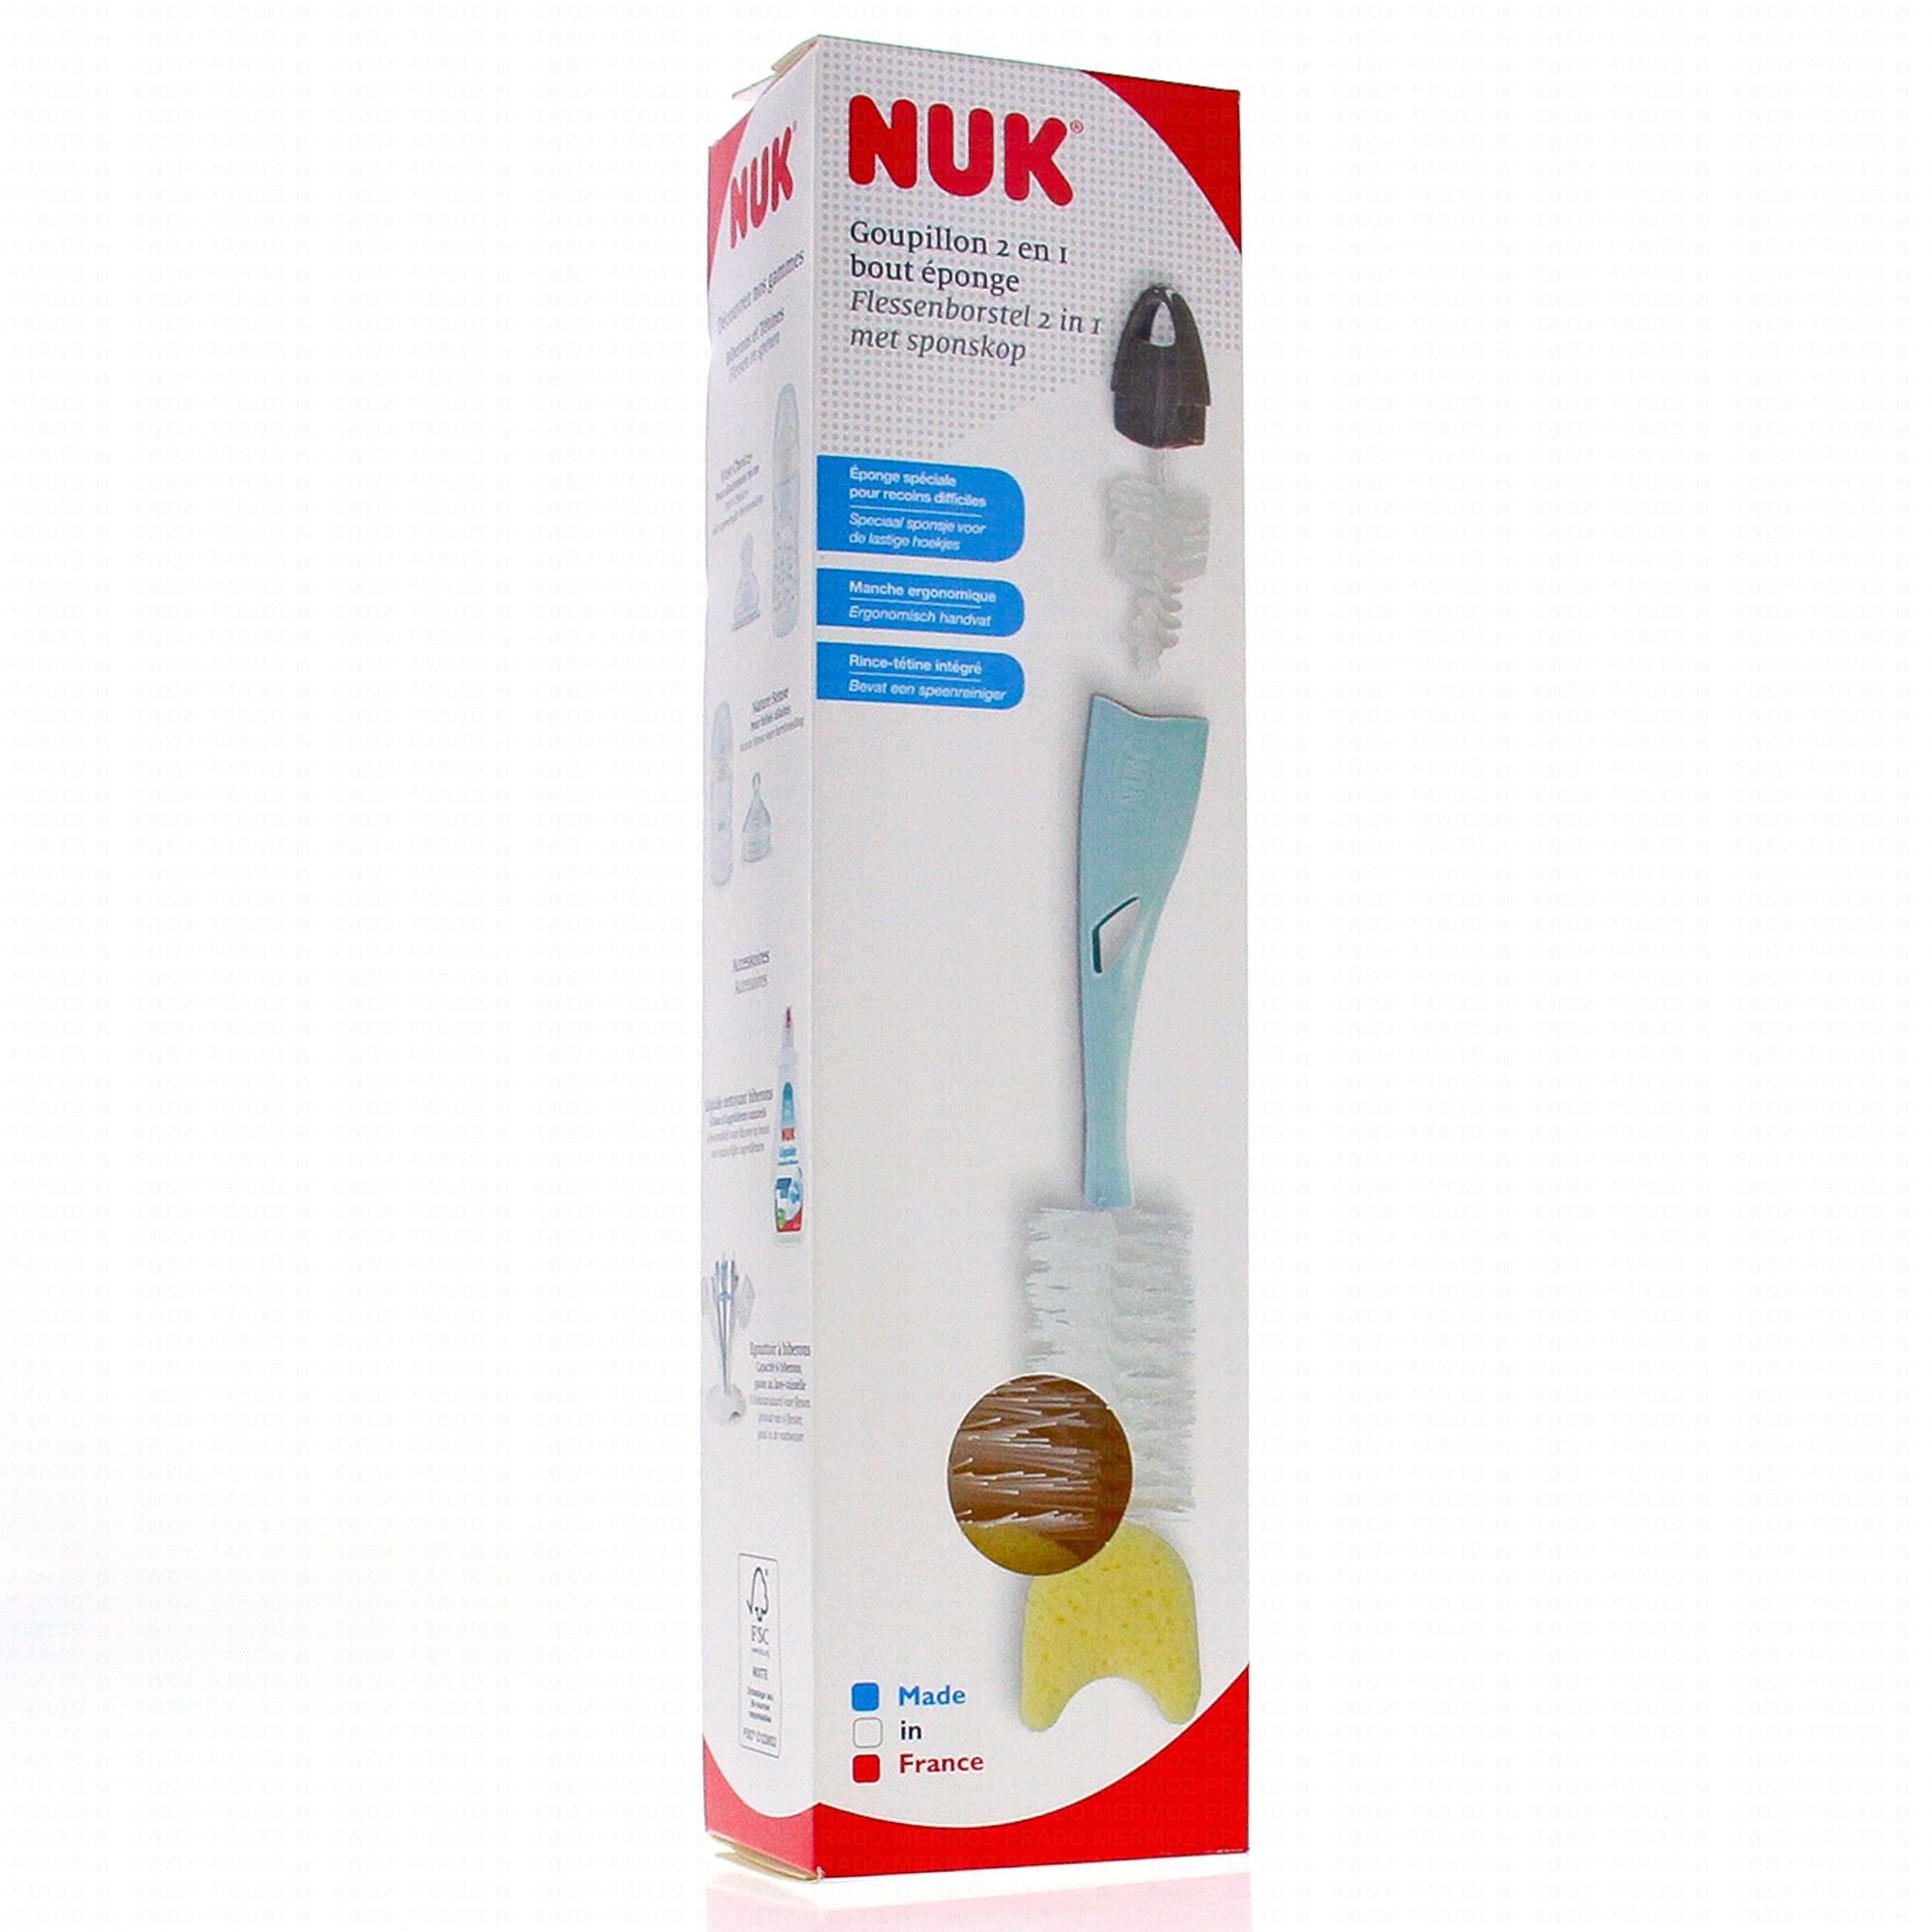 NUK - Détergent pour biberon et goupillon - 2 x liquide vaisselle